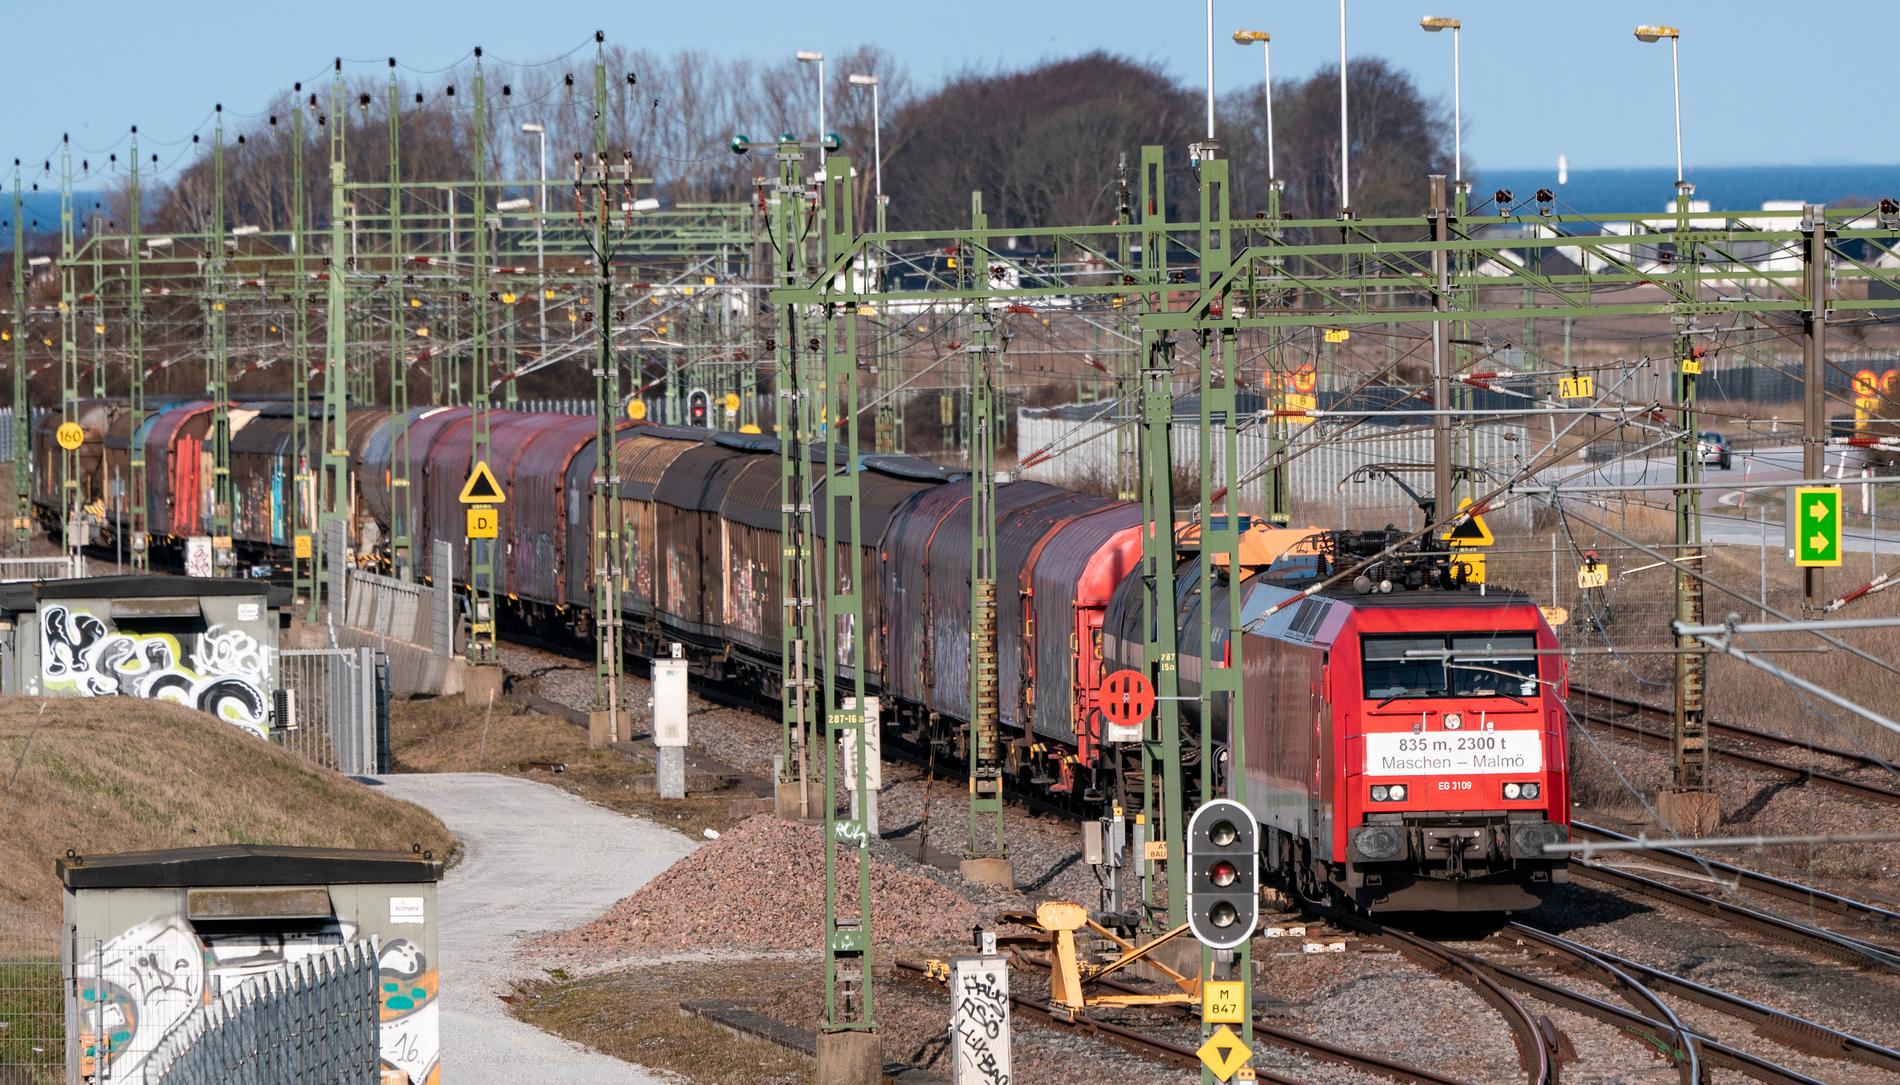 Det 835 meter långa och 2300 ton tunga rekordtåget passerar Svågertorp utanför Malmö på lördagsmorgonen.